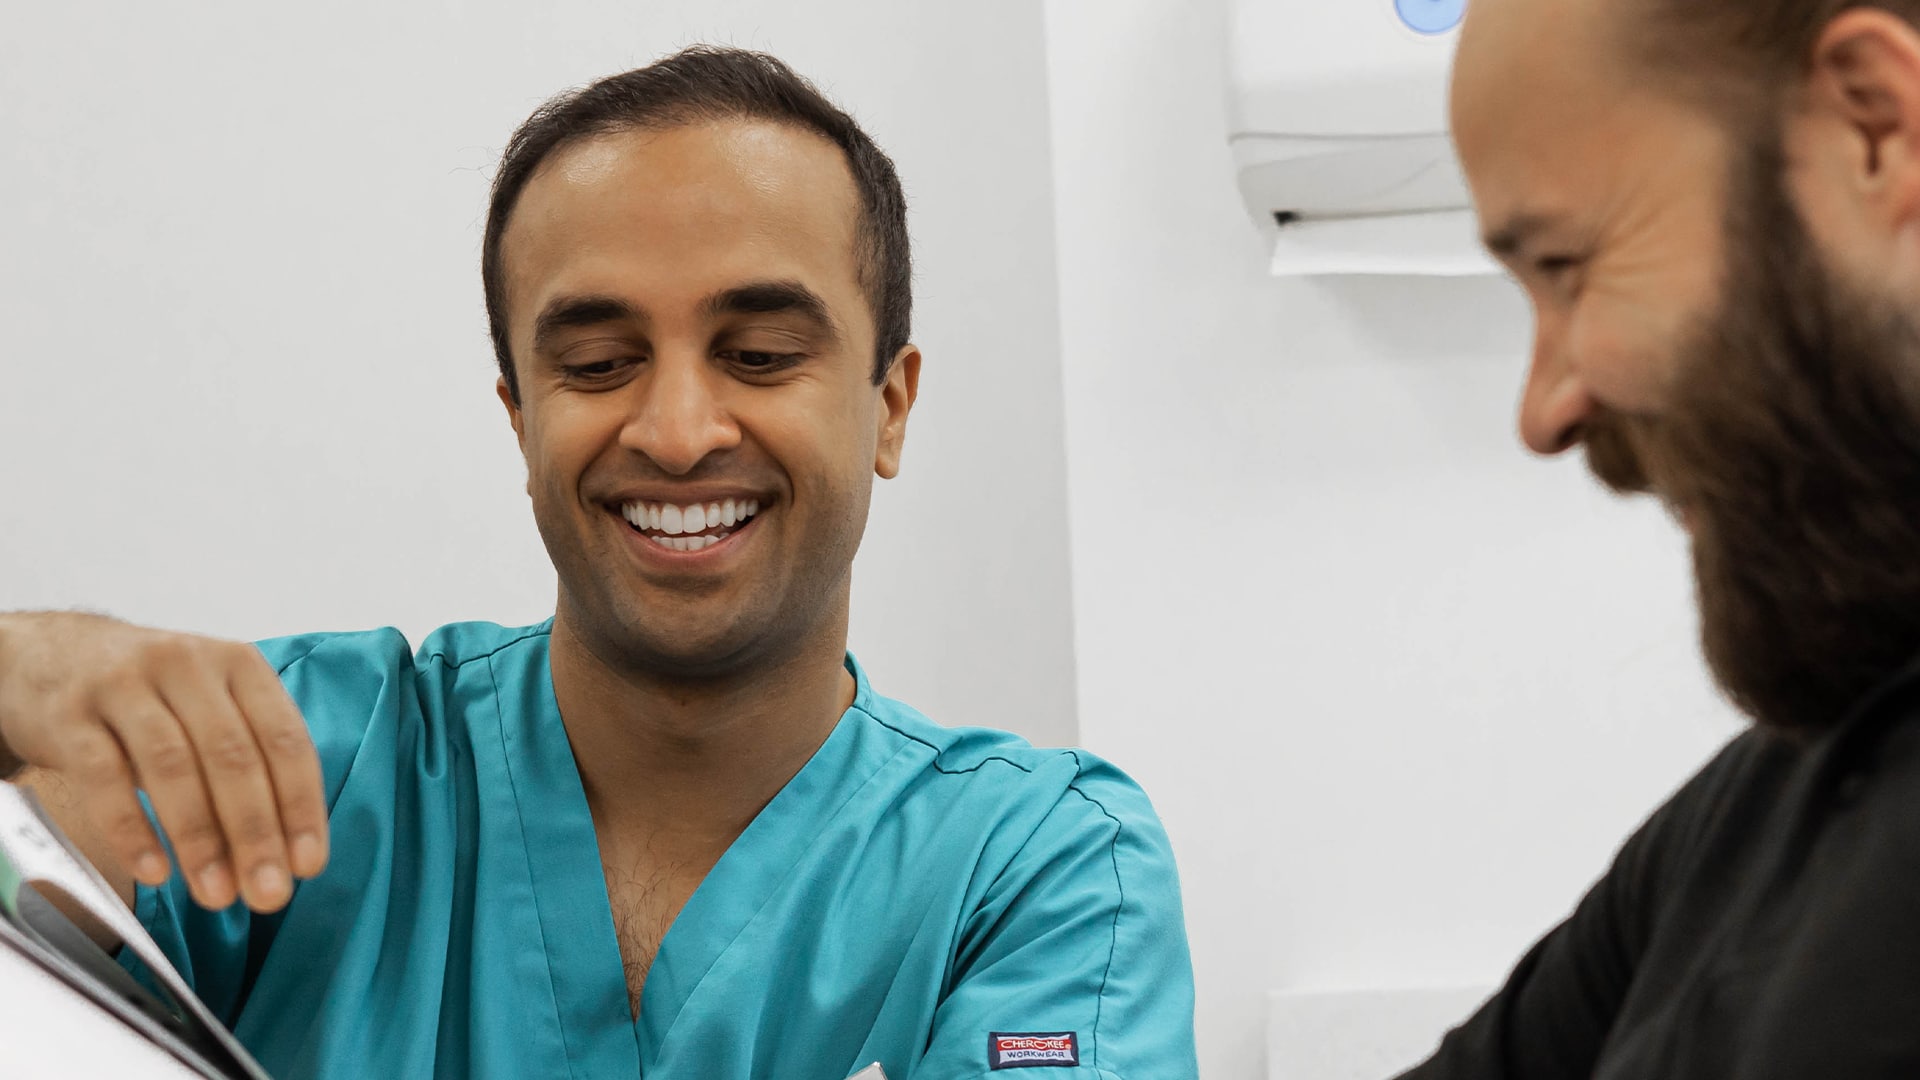 Dr Mohsin Patel explains a treatment to a patient.